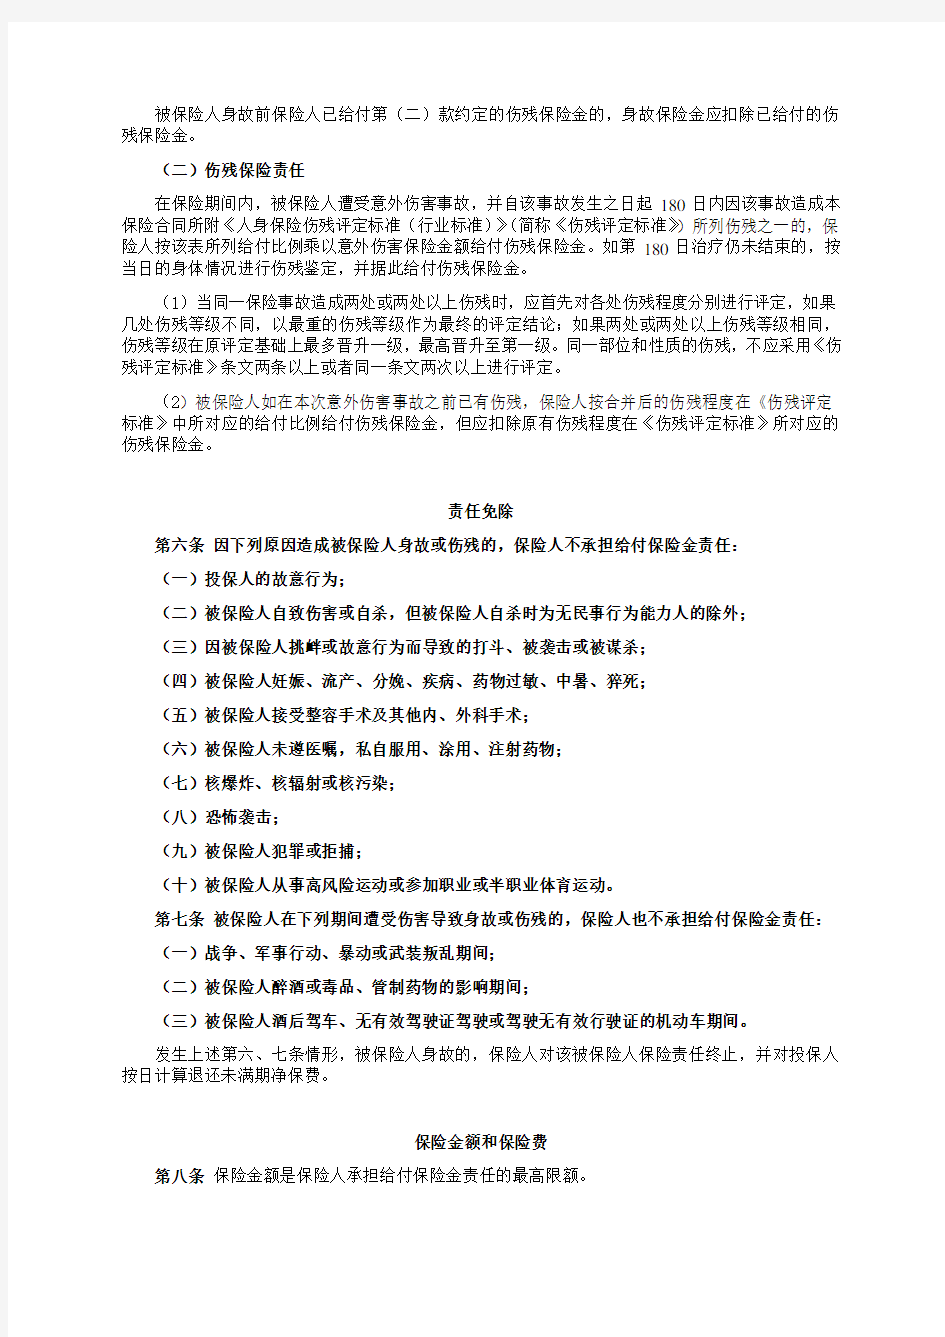 中国平安财产保险股份有限公司平安团体意外伤害保险条款